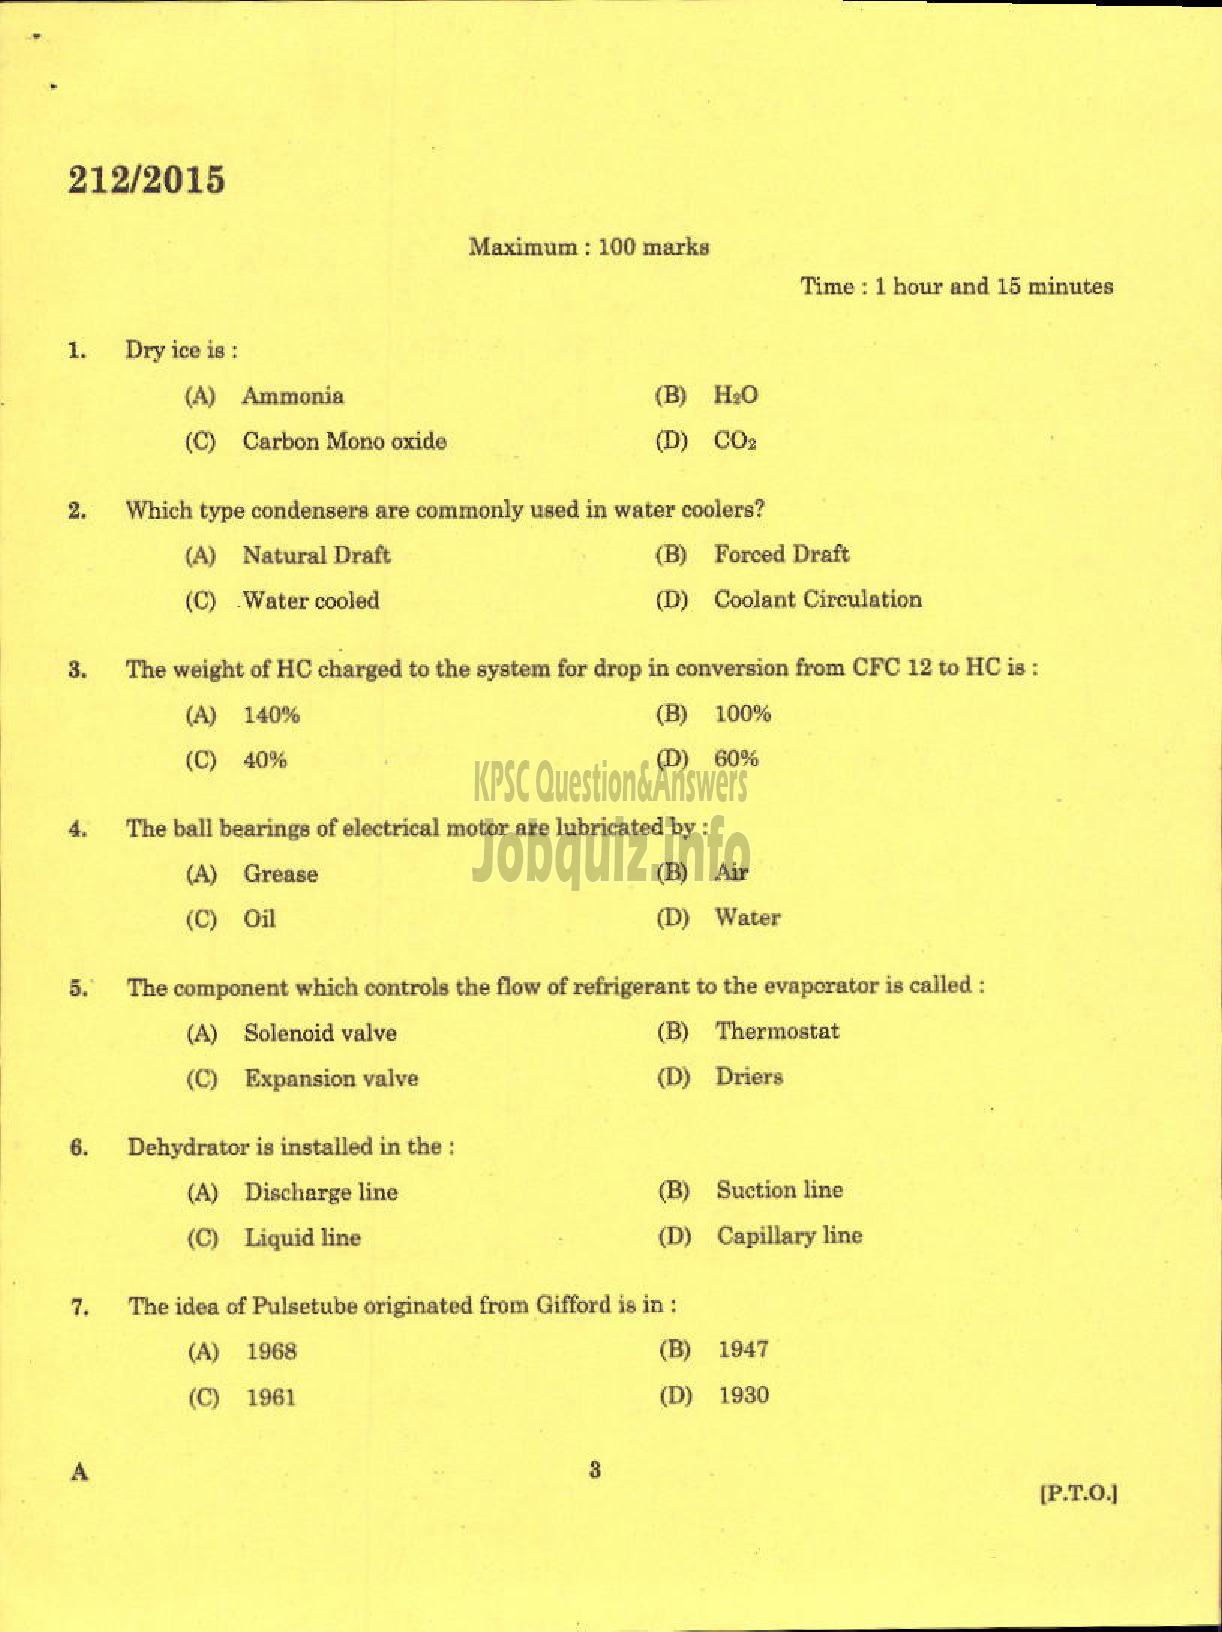 Kerala PSC Question Paper - TECHNICIAN GR II REFRIGERATION MECHANIC KCMMF LTD-1